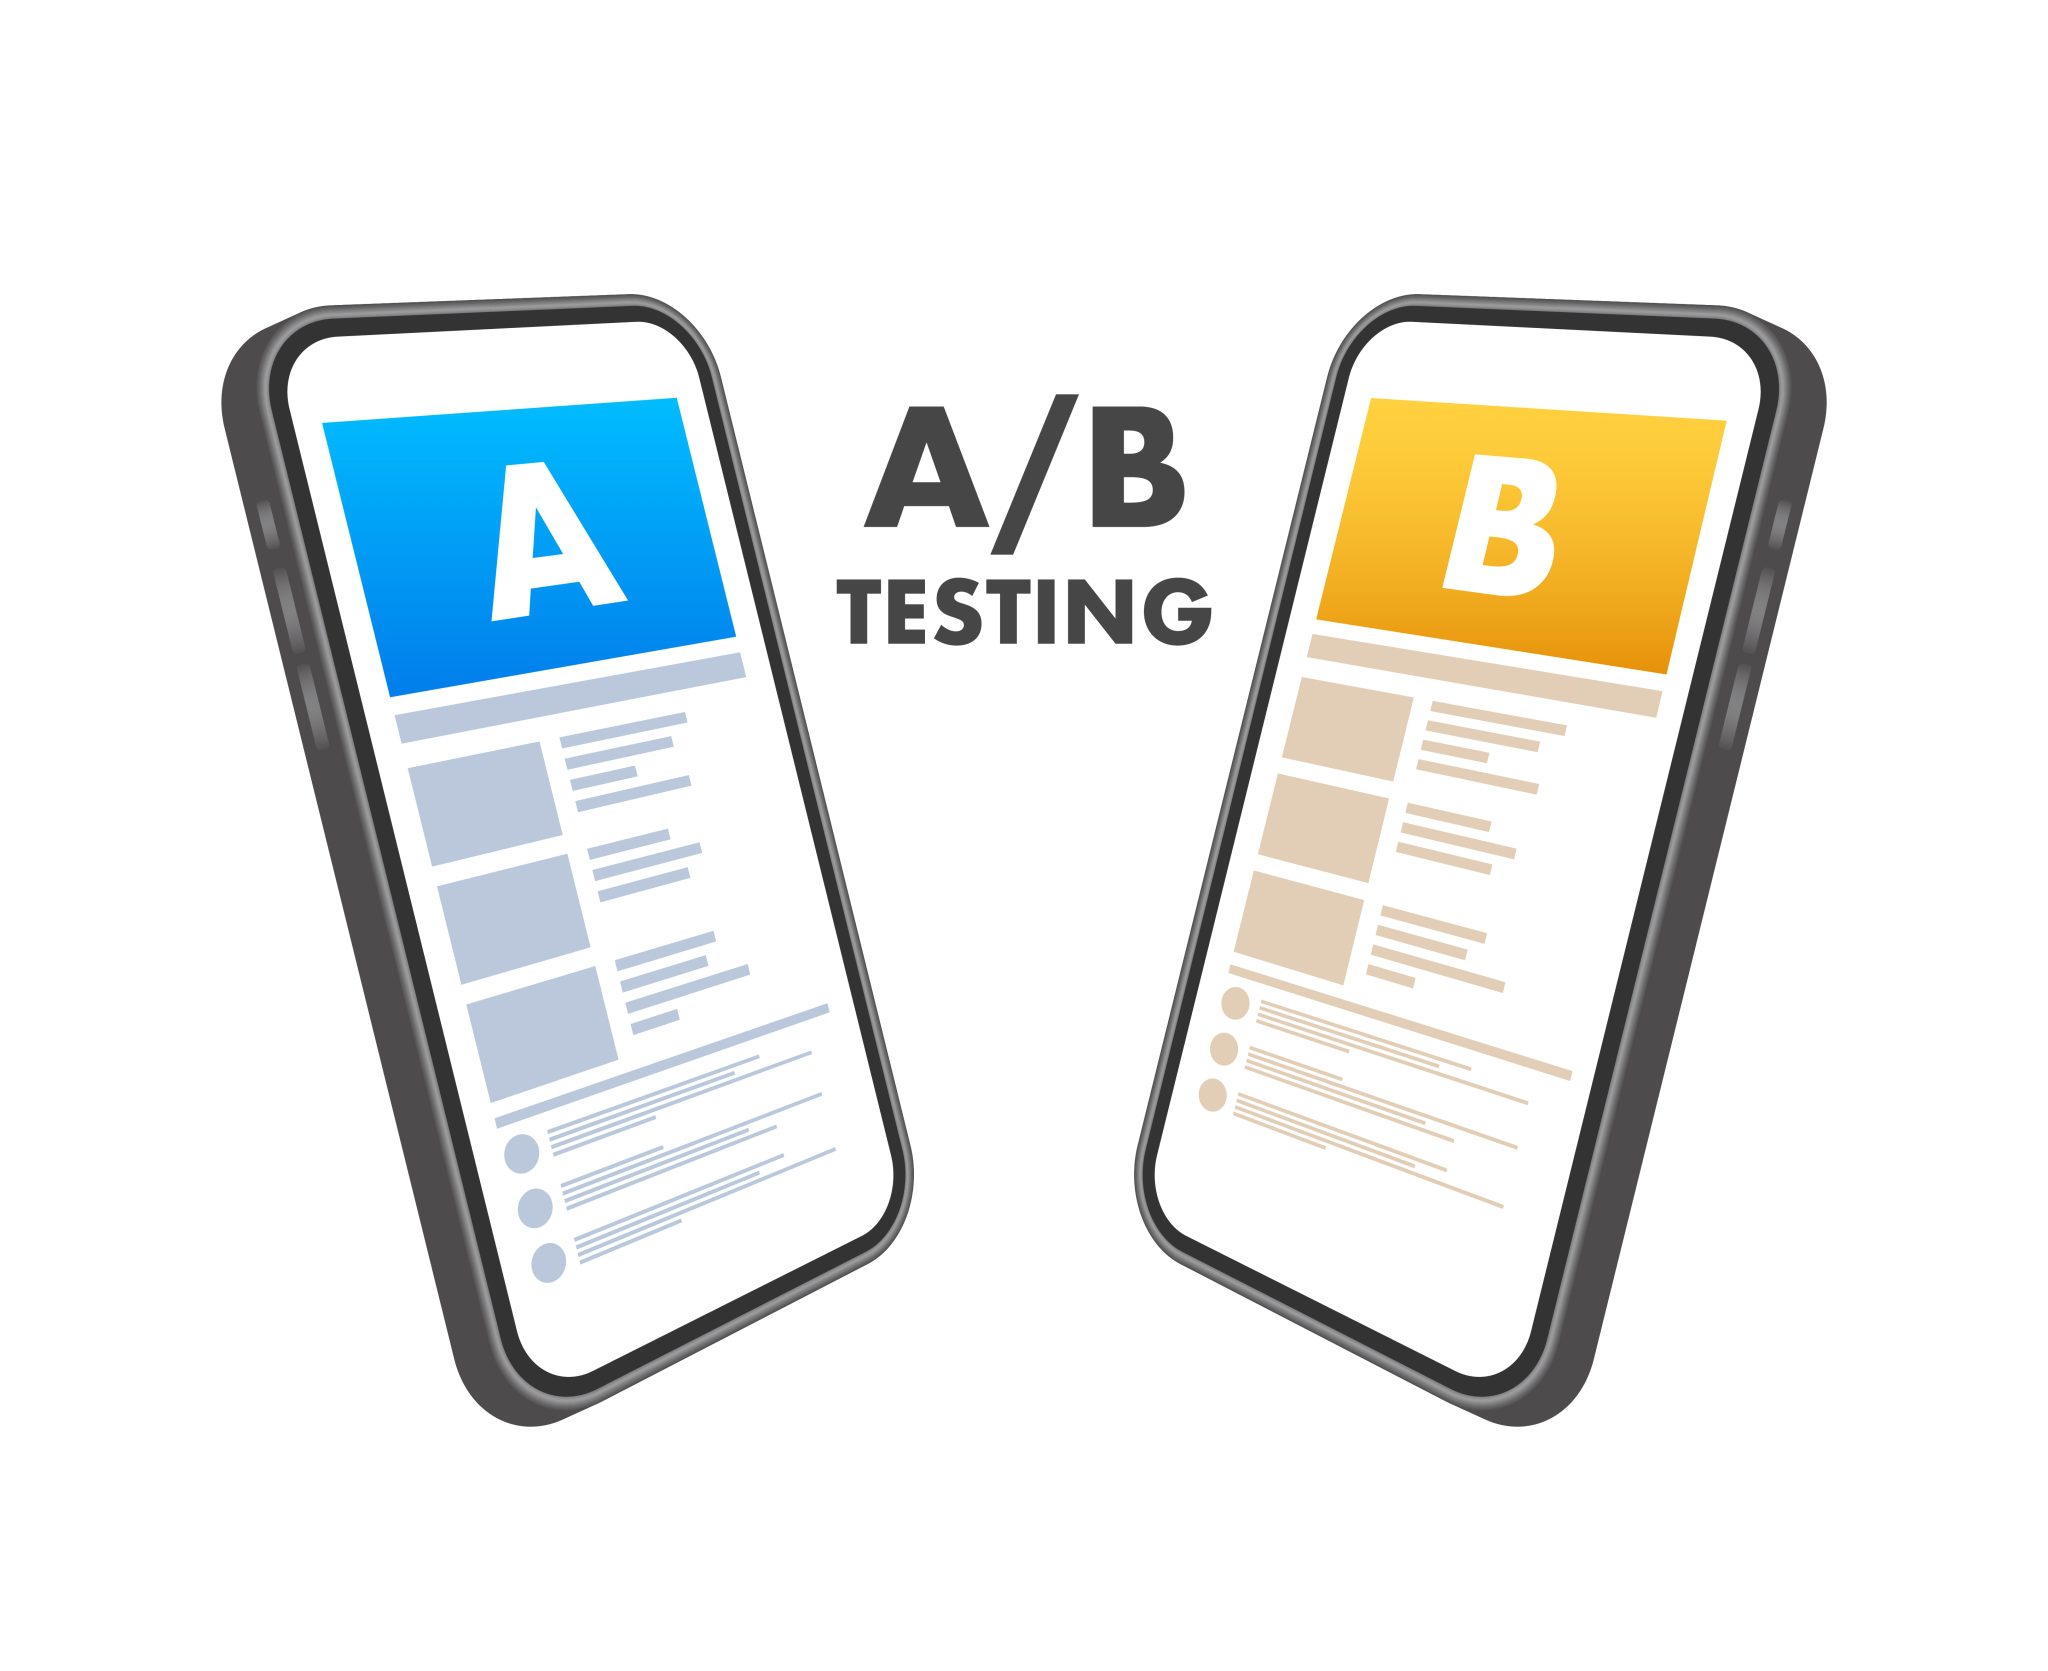 Fix user. Аб тестирование. A/B тест. Ab тестирование конверсия. Ab тестирование компьютер планшет.